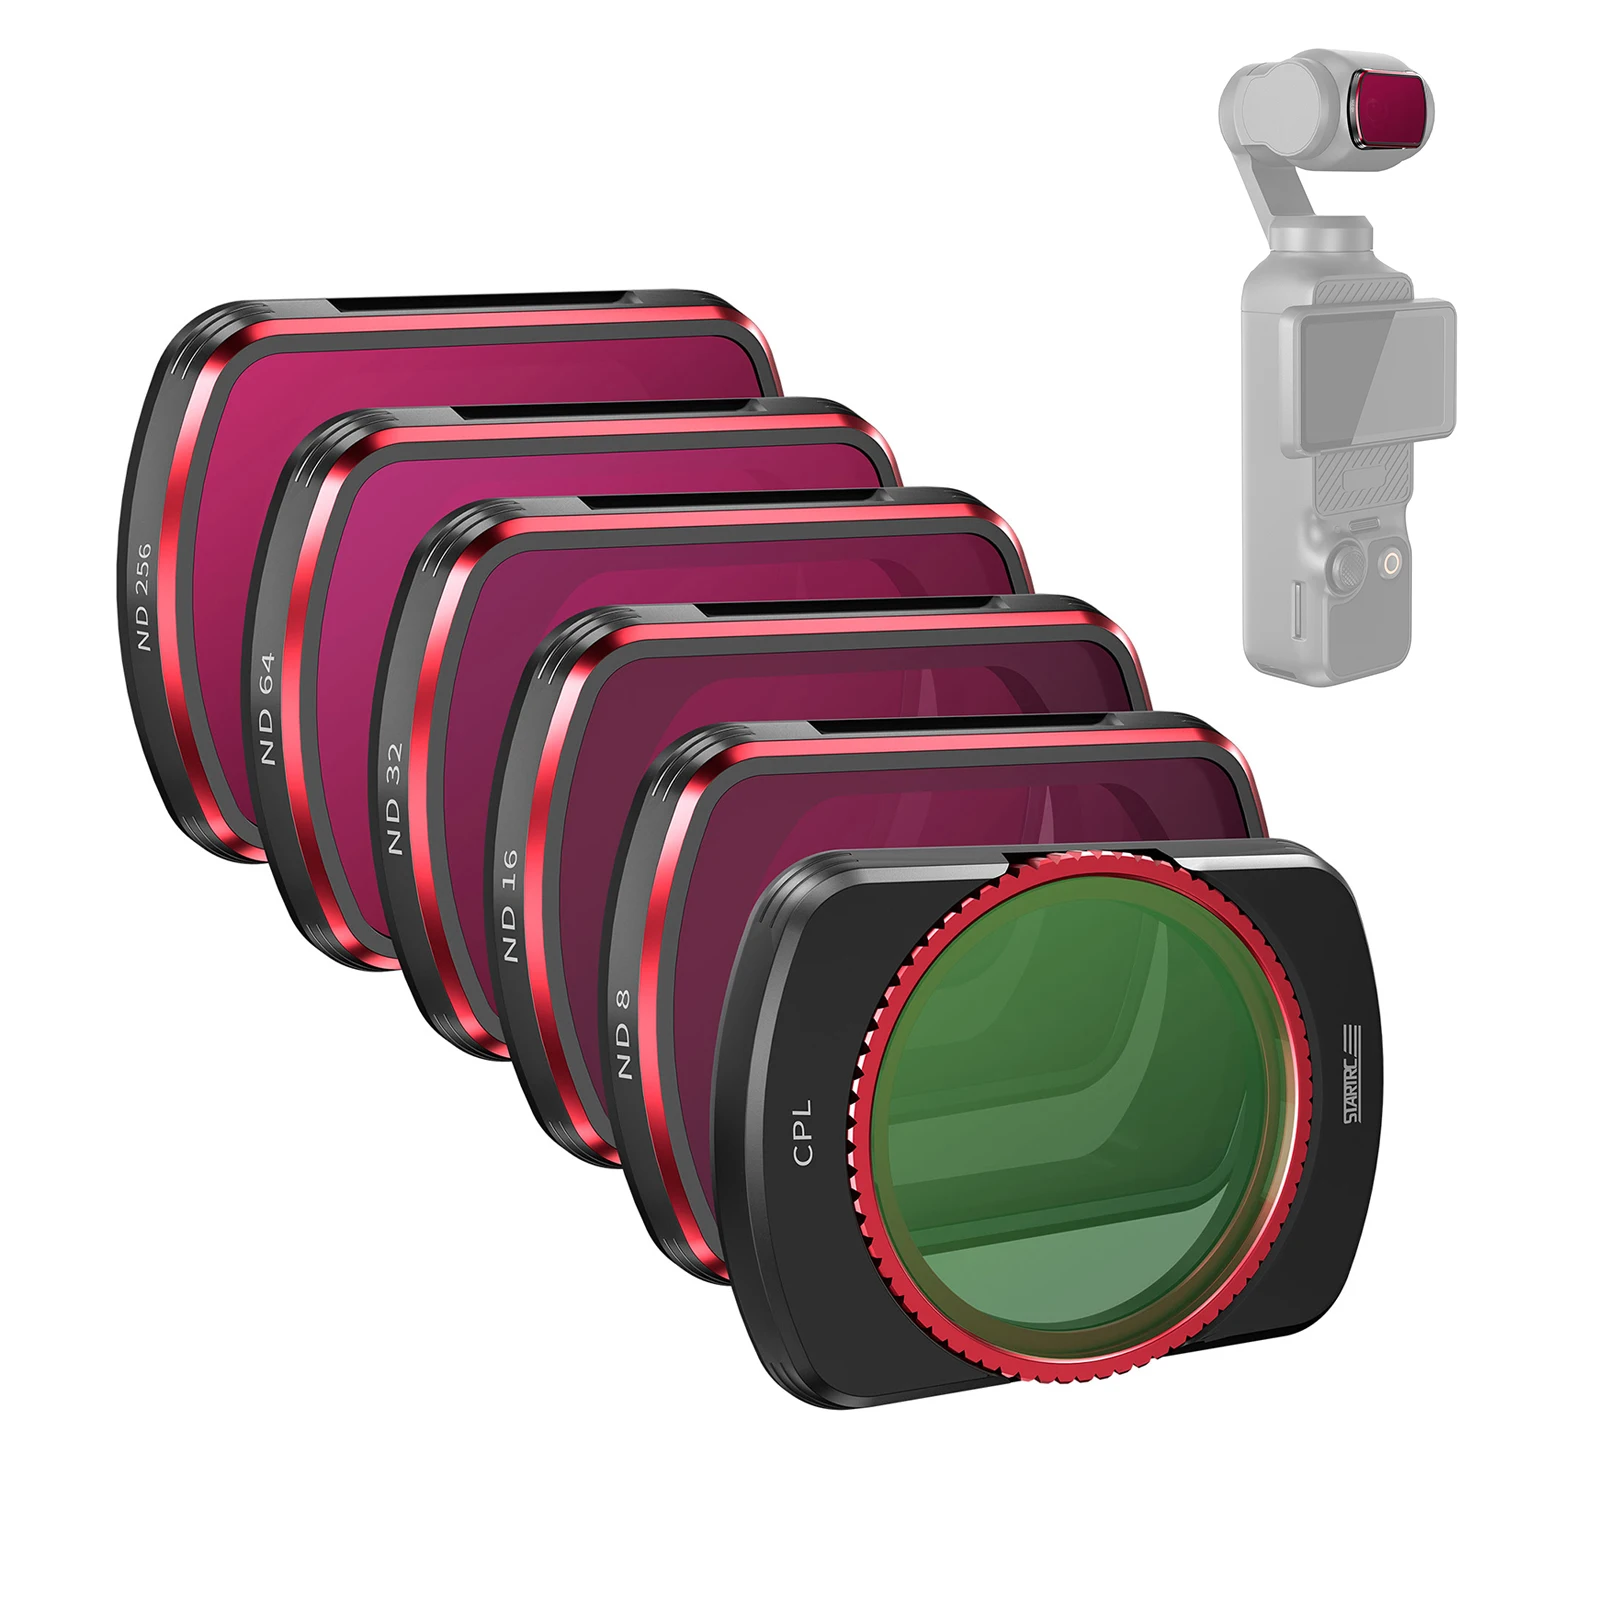 Набор фильтров STARTRC из 4 упаковок, Комплект фильтров для объектива, Фильтры ND16/ND64/256 /32, Алюминиевая рамка, Совместимая с DJI Pocket 3